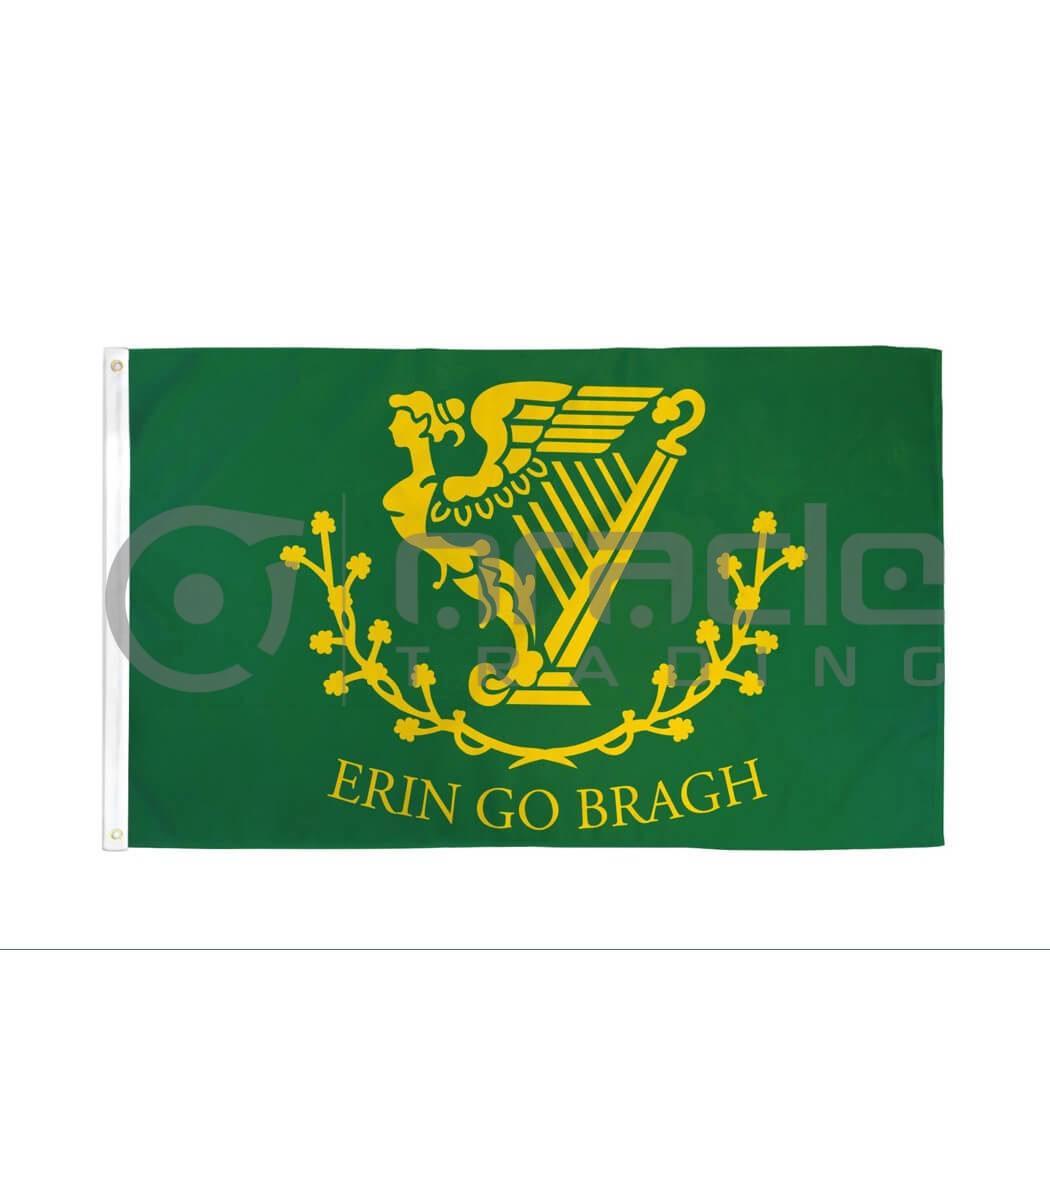 Large 3'x5 Erin Go Bragh Flag